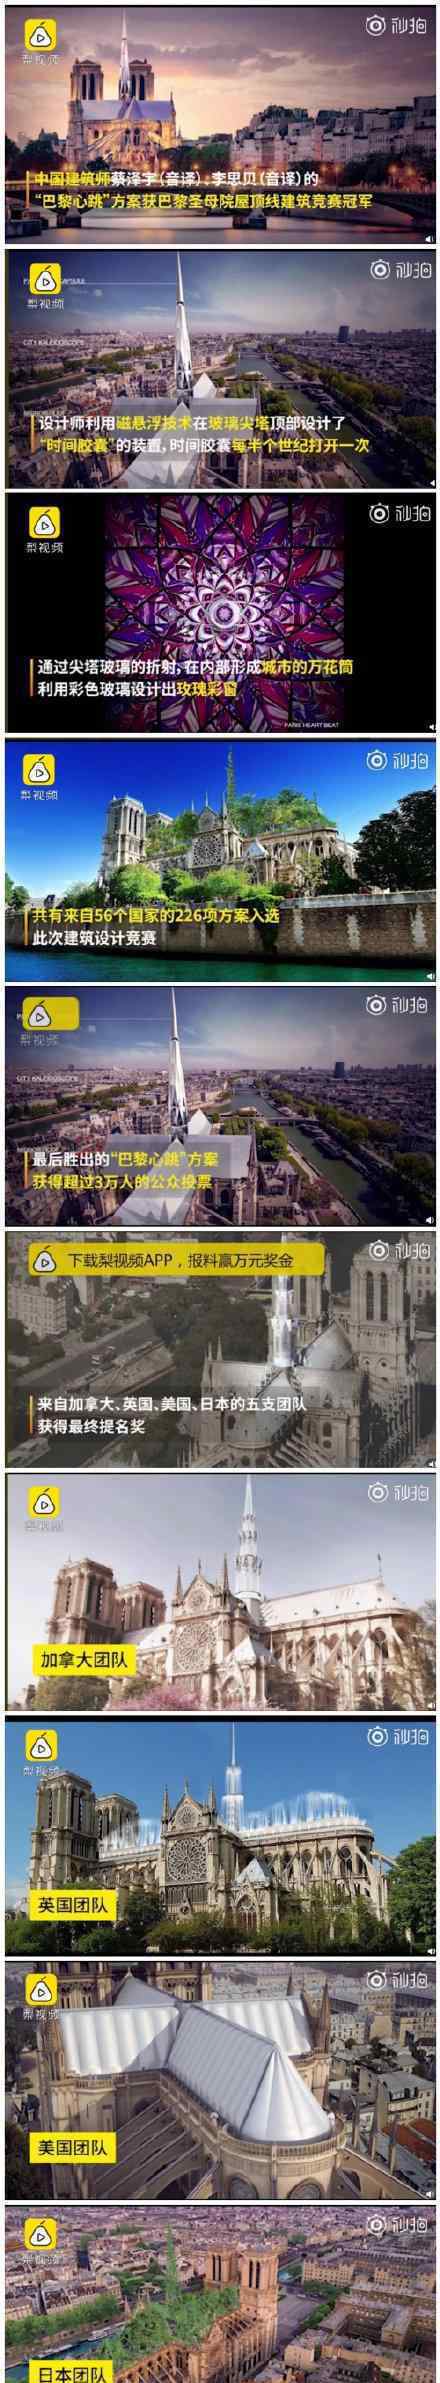 圣母院建筑竞赛中国建筑师夺冠 夺冠作品长啥样?